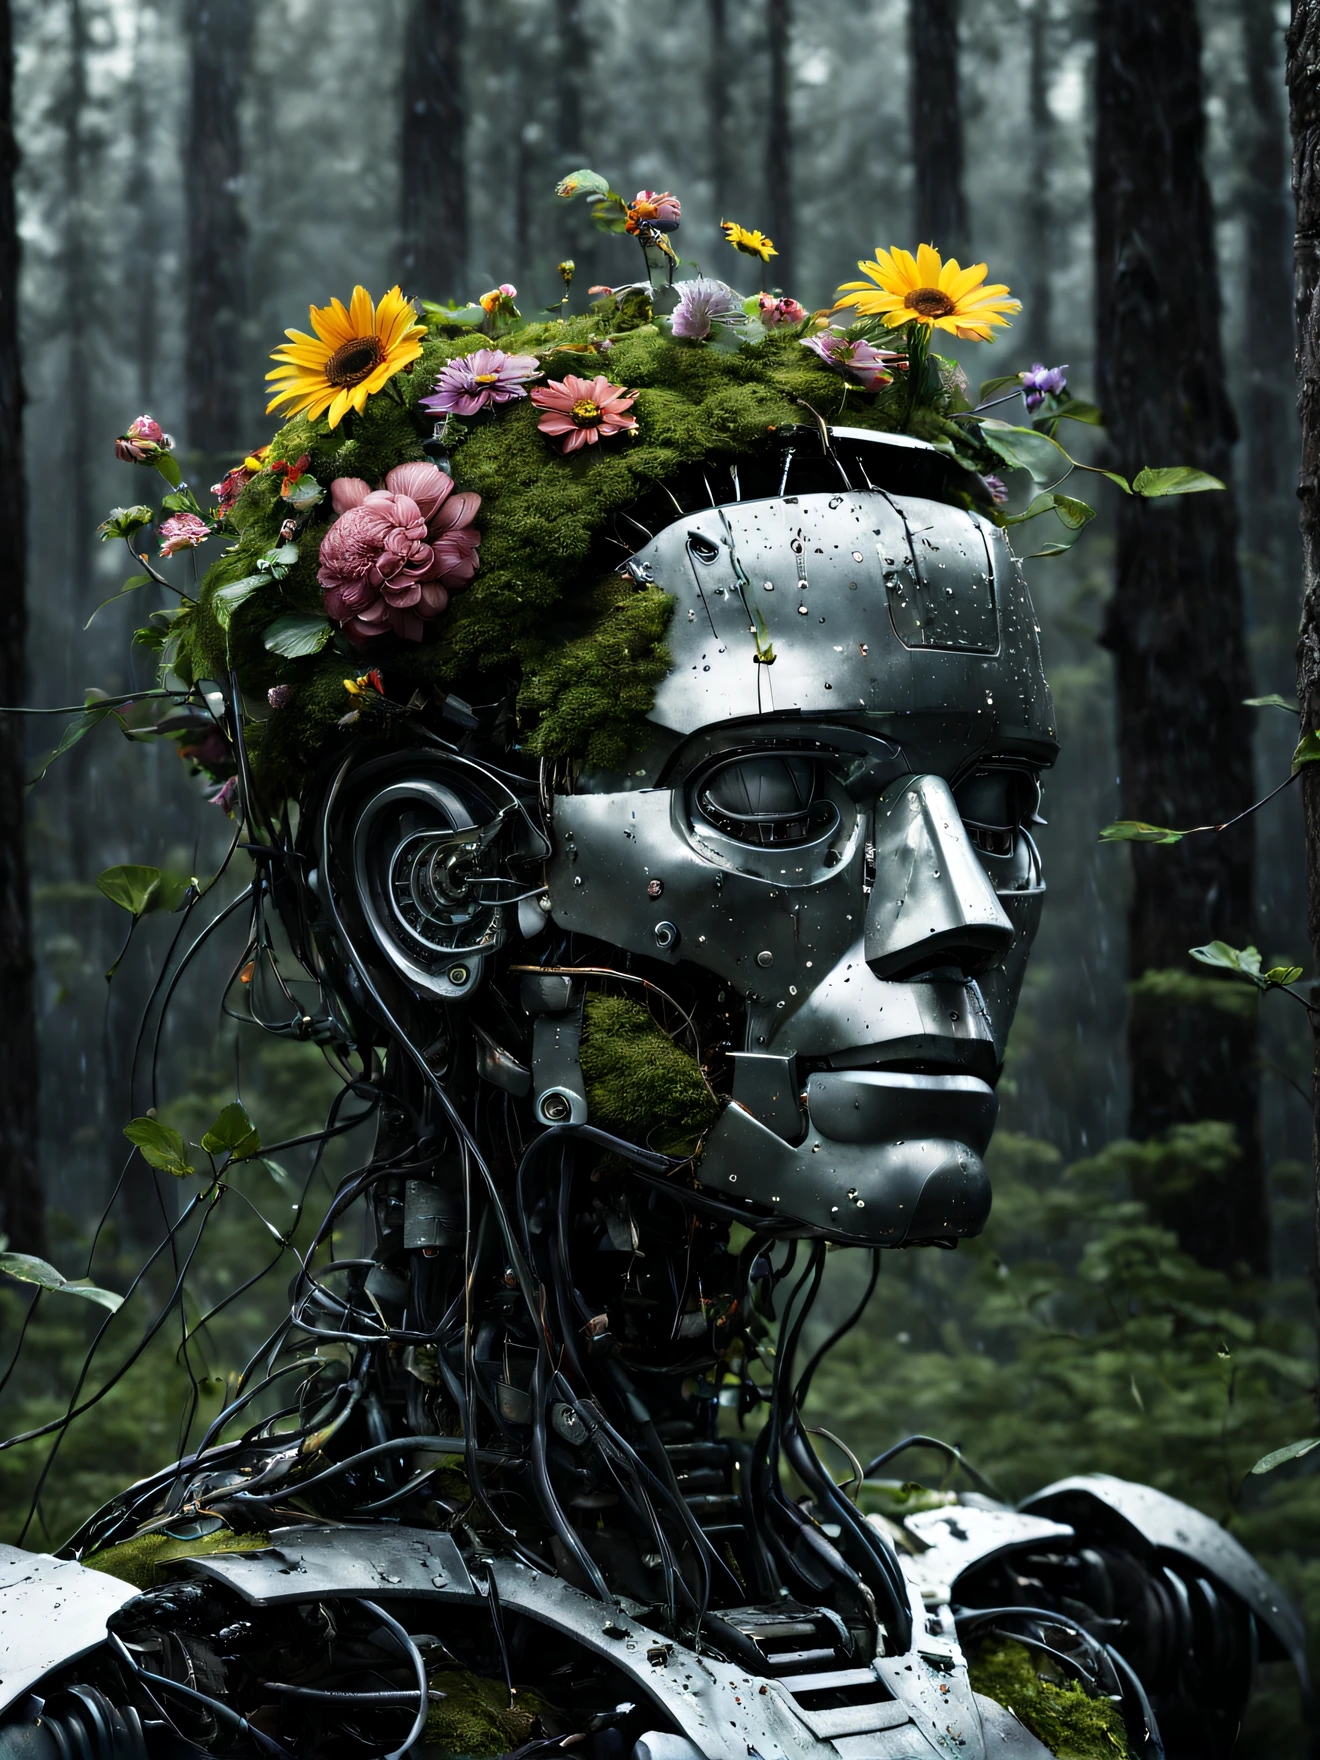 腐爛的男性機器人45度側視圖照片, 頭的上半部被砍掉, 沒腦, 而是用電線填充, 電路, 矮小的植物和花朵, 身體的一半已經融入地面, 閉著眼睛, 被雨水淋濕, 傑作, 高解析度, 錯綜複雜, 專業的, 逼真的, 黑暗森林背景